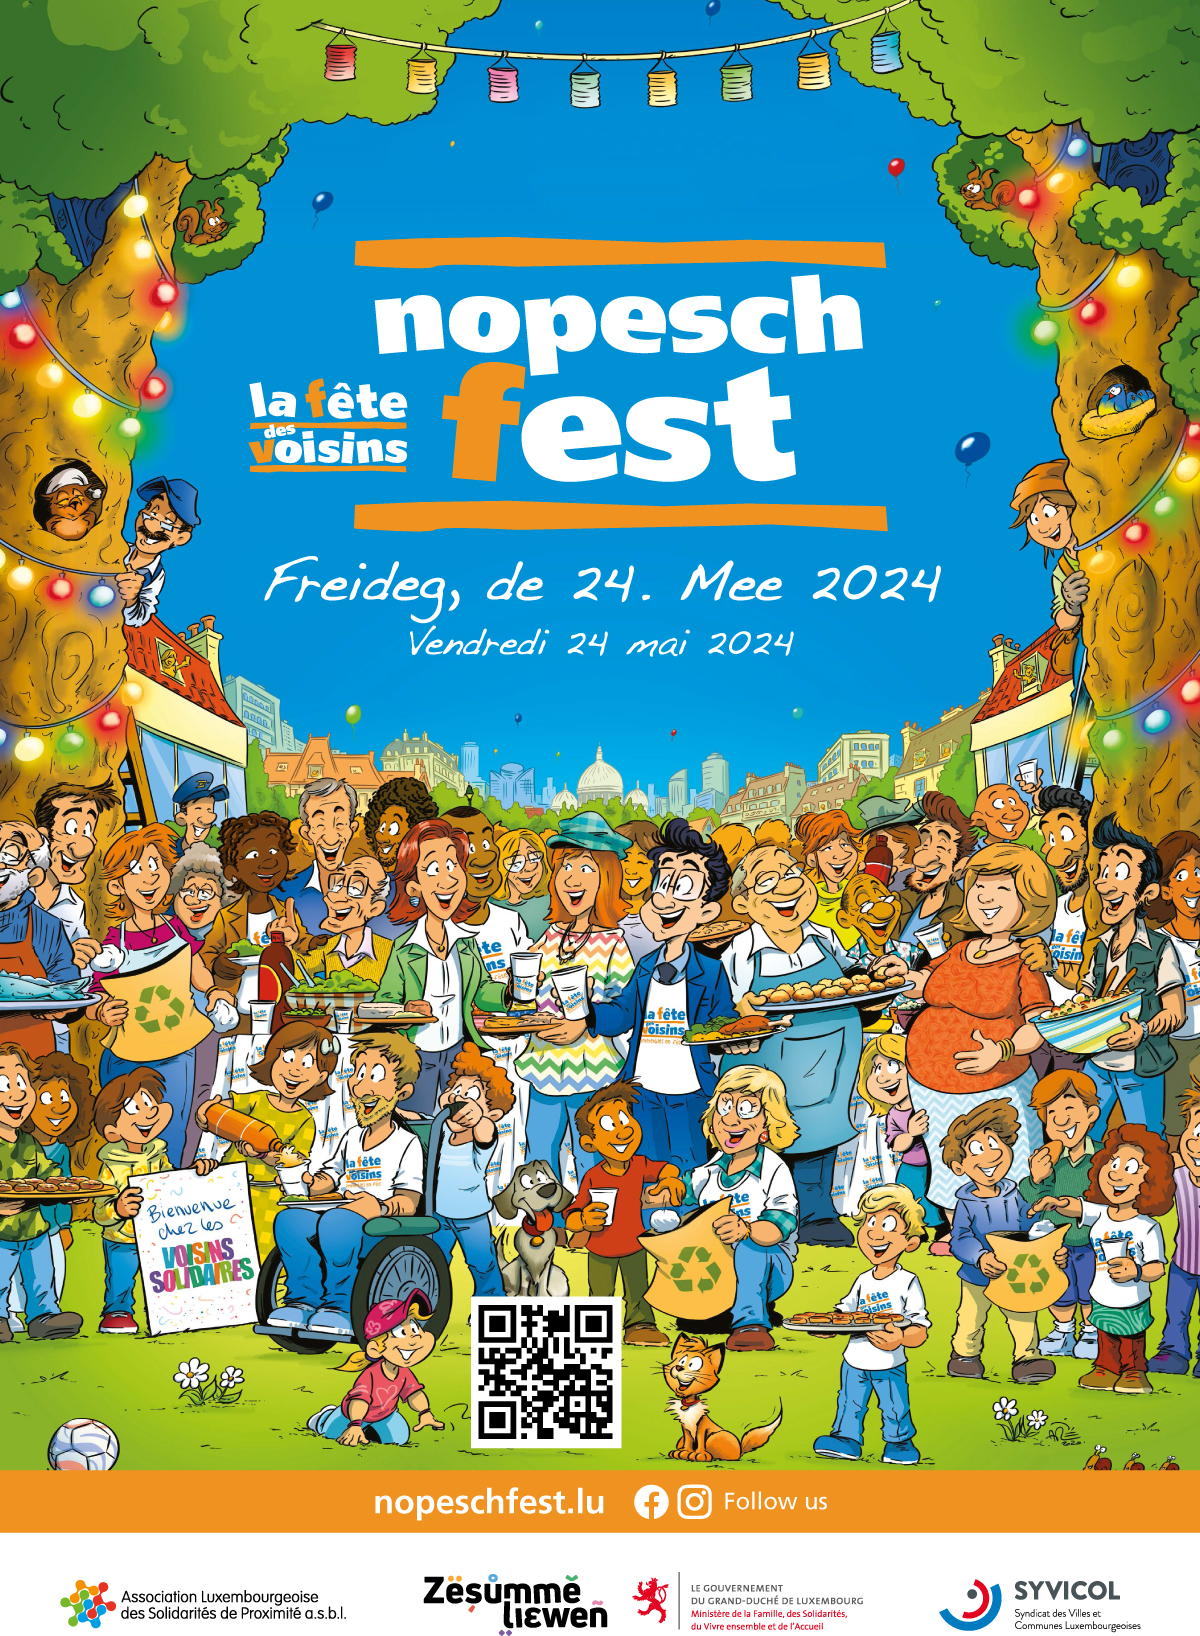 Nopeschfest | Fête des voisins